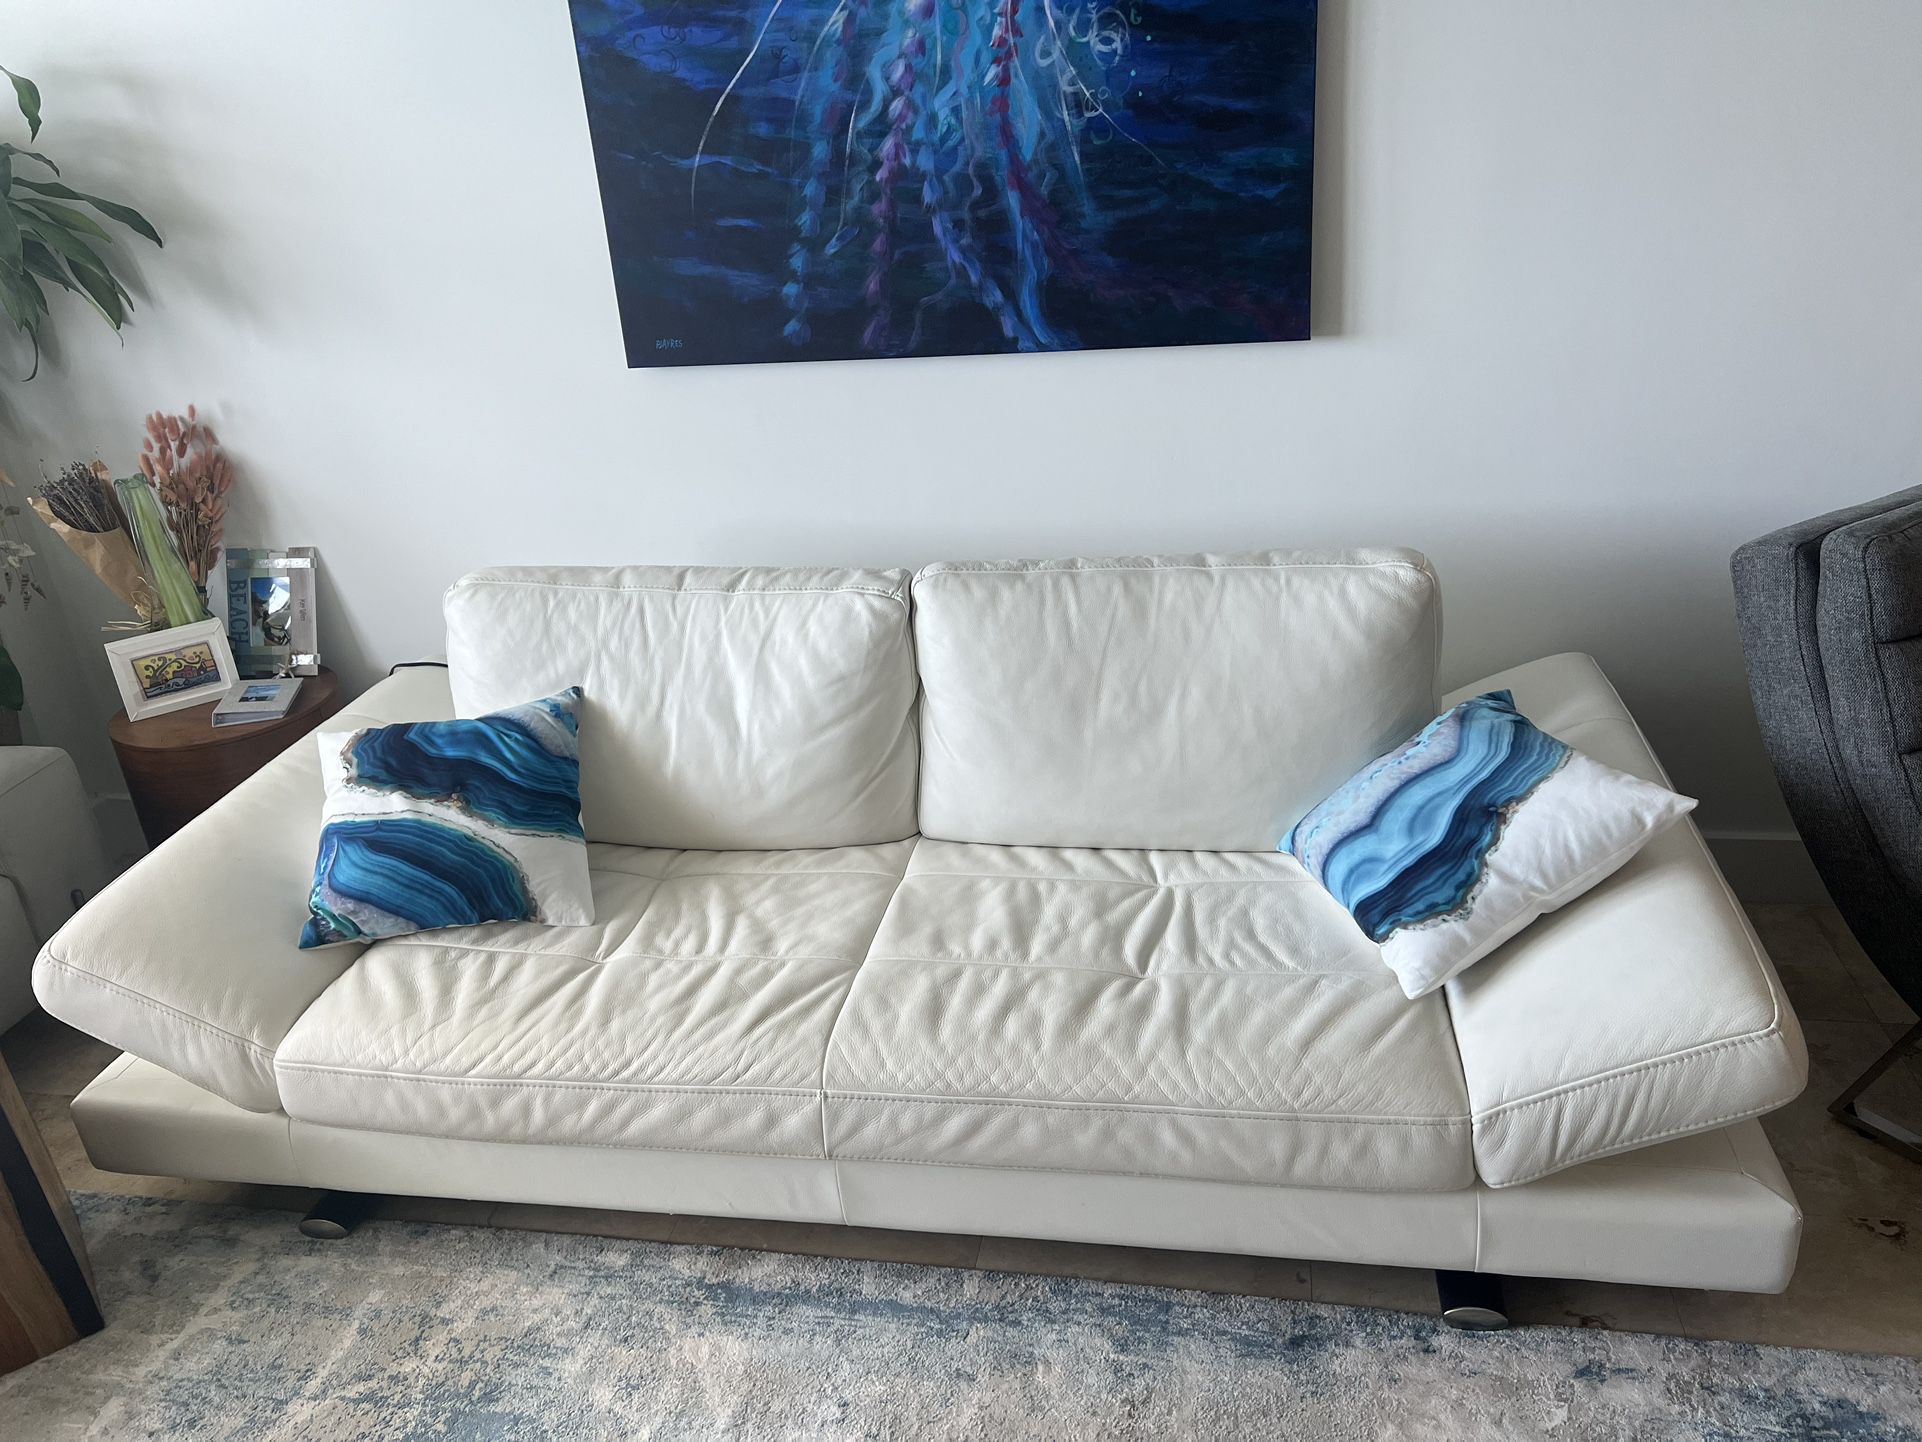  Carlo Perazzi white Leather Couch/futon